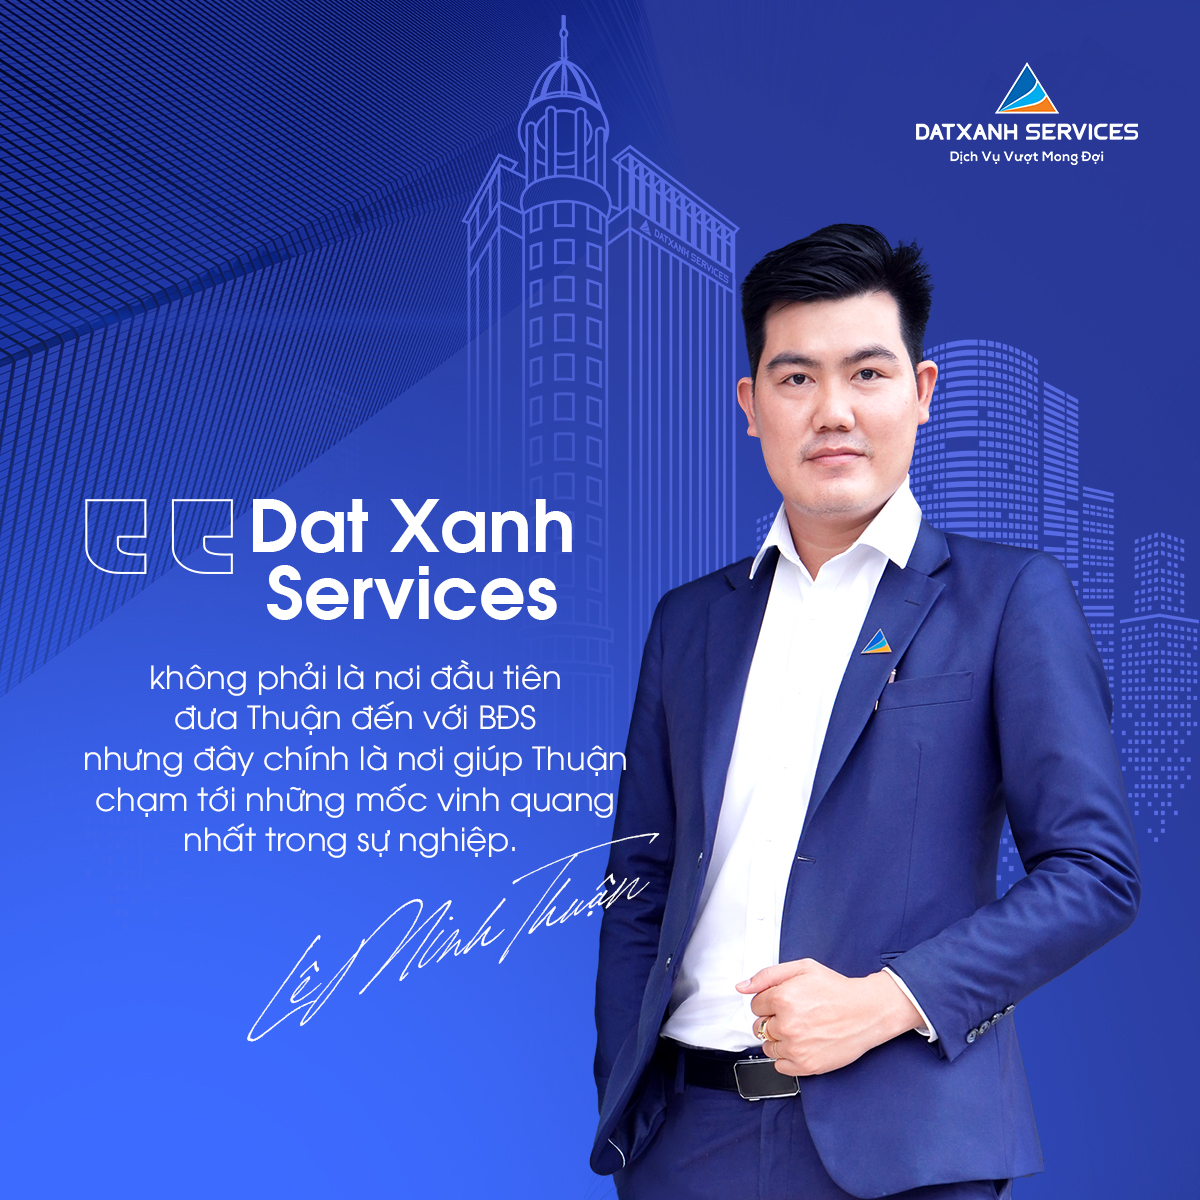 Lê Minh Thuận GĐBH Dat Xanh Services: “Đồng đội bên ta, ngại gì gian khó”